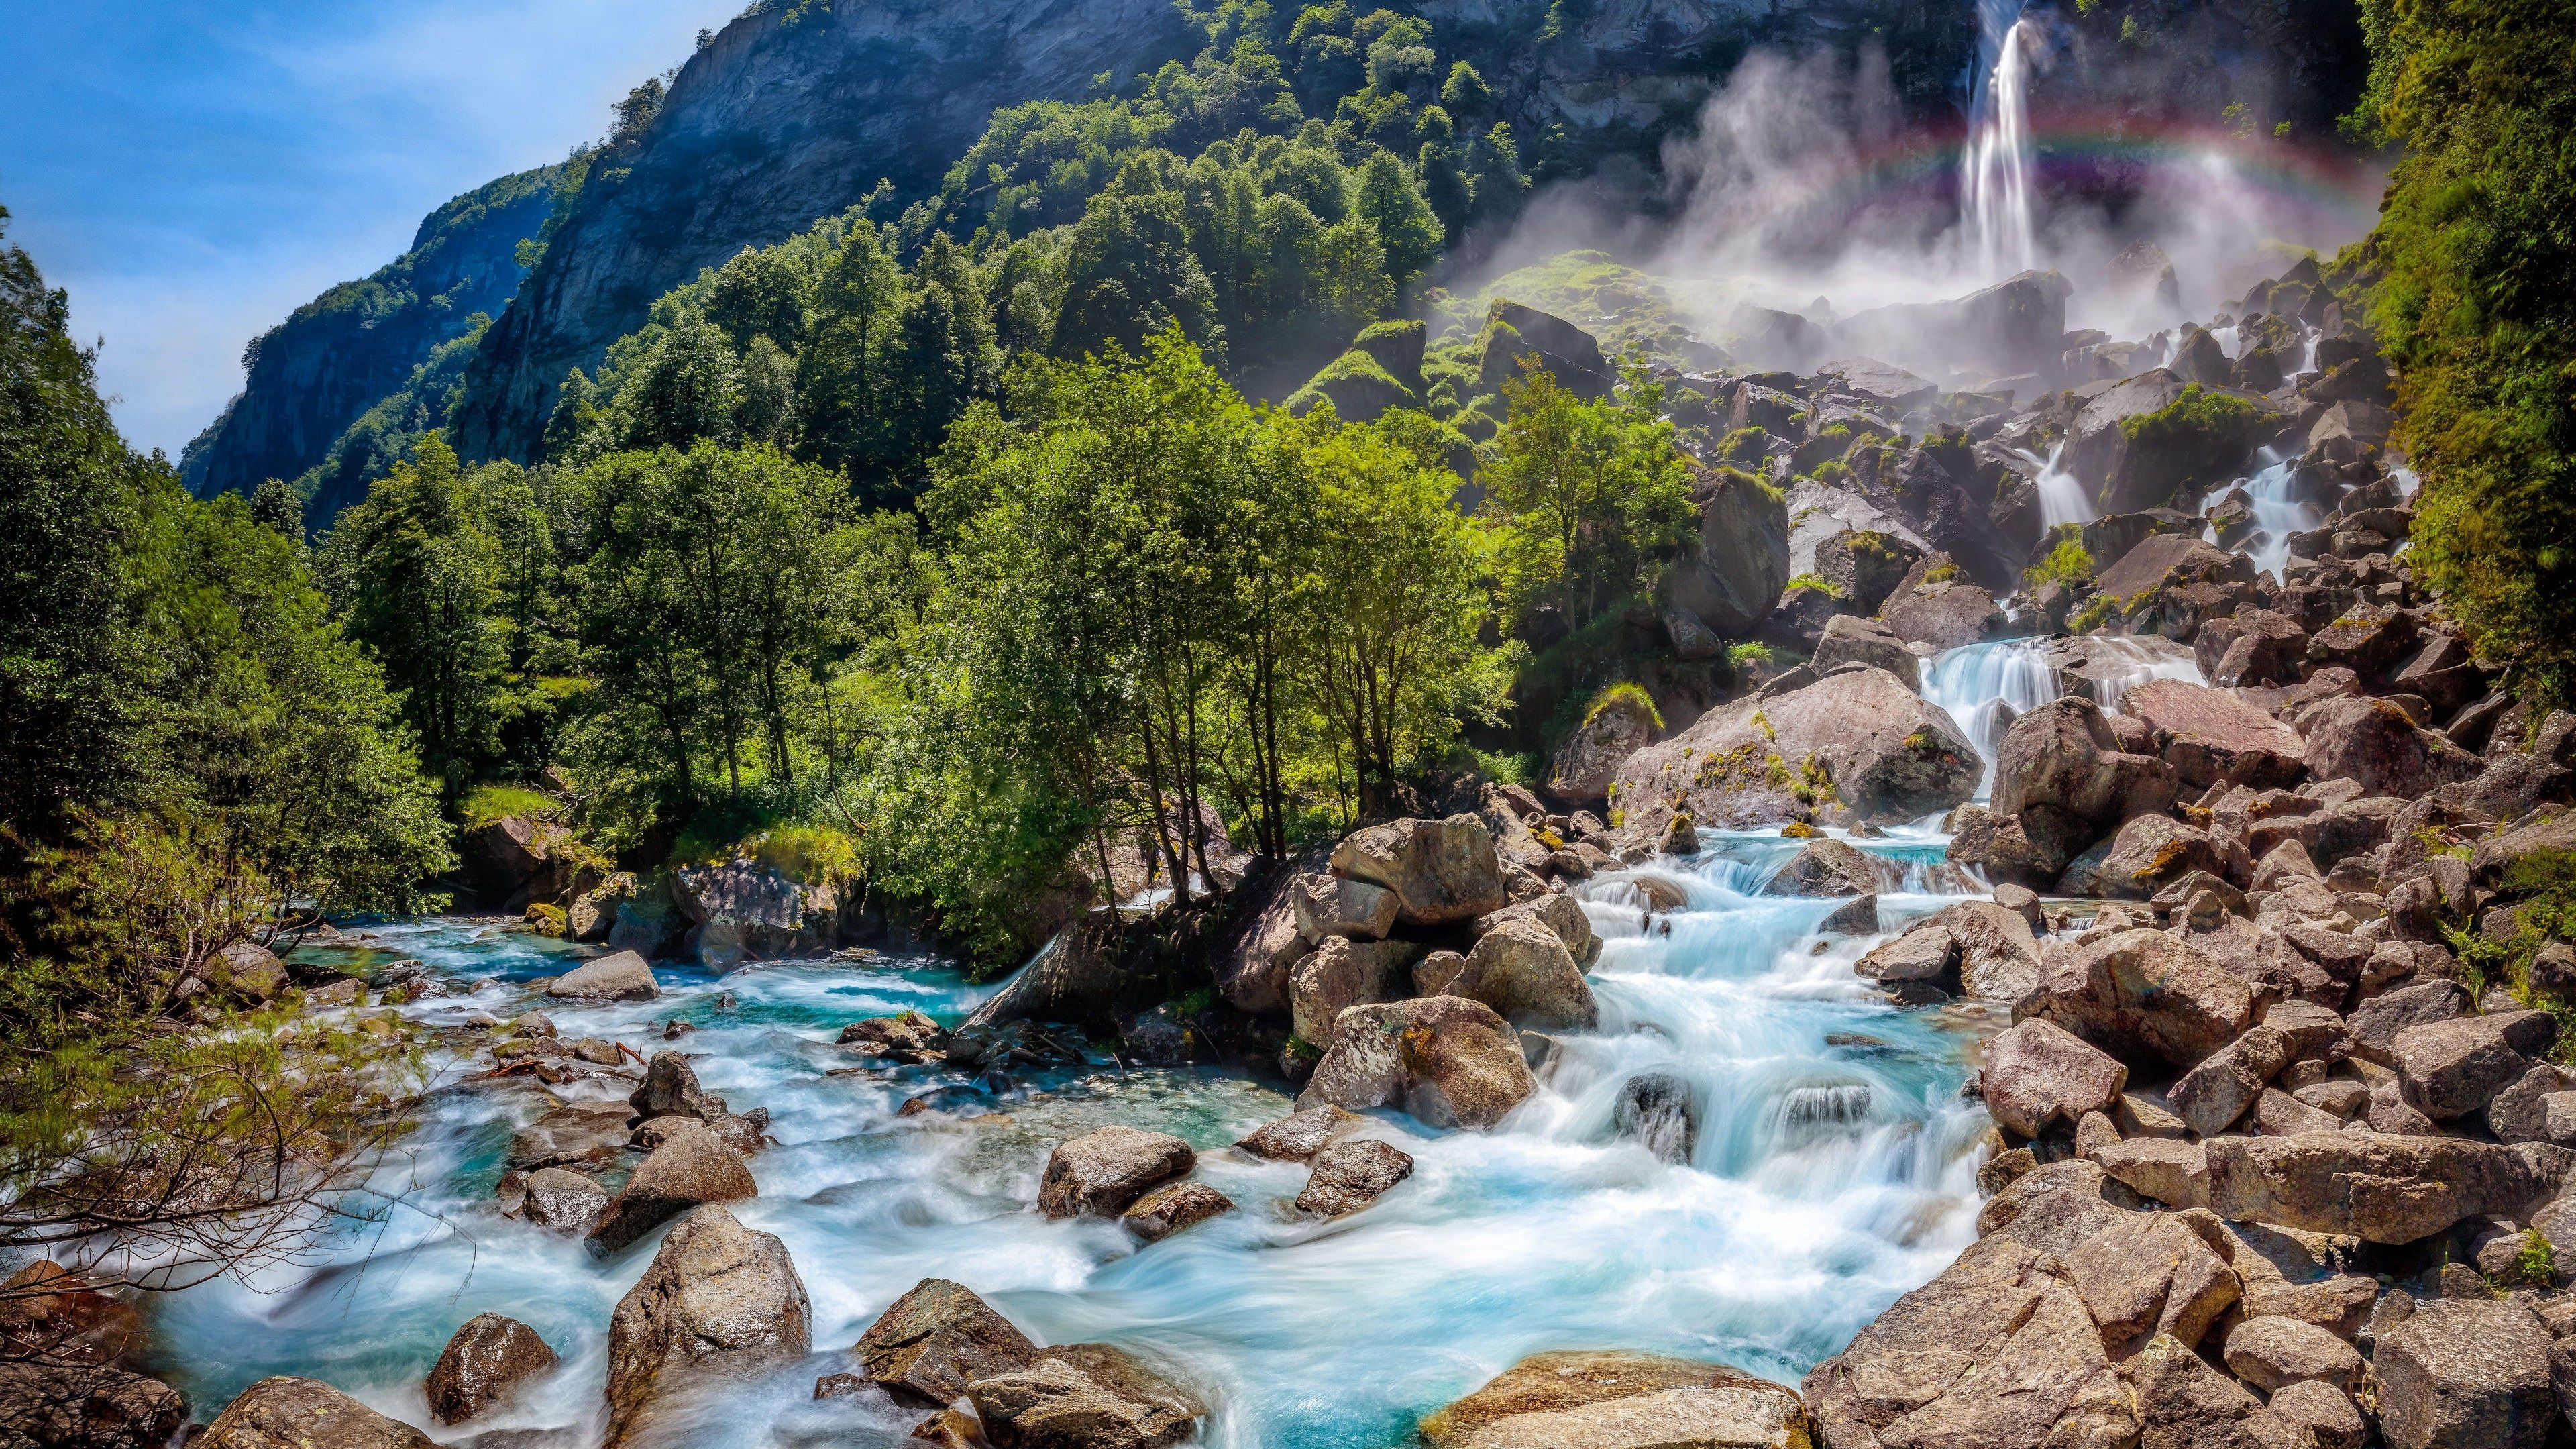  4k Natur Hintergrundbild 3840x2160. Schweiz Natur Landschaft, Wasserfall, Felsen, Bäume, Wald 3840x2160 UHD 4K Hintergrundbilder, HD, Bild